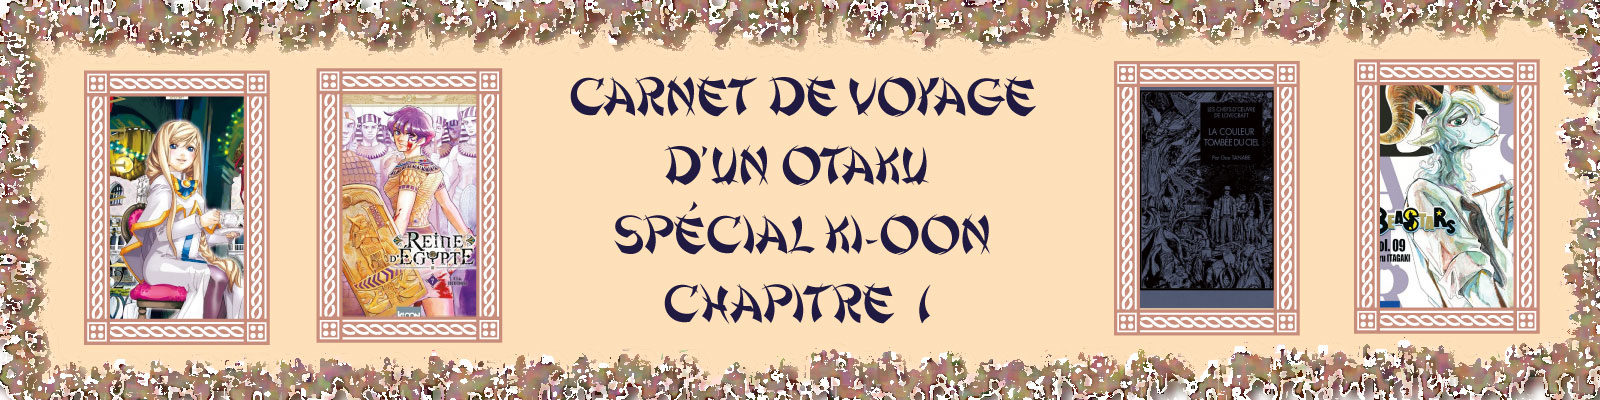 CARNET-DE-VOYAGE-OTAKU-ki-oon2